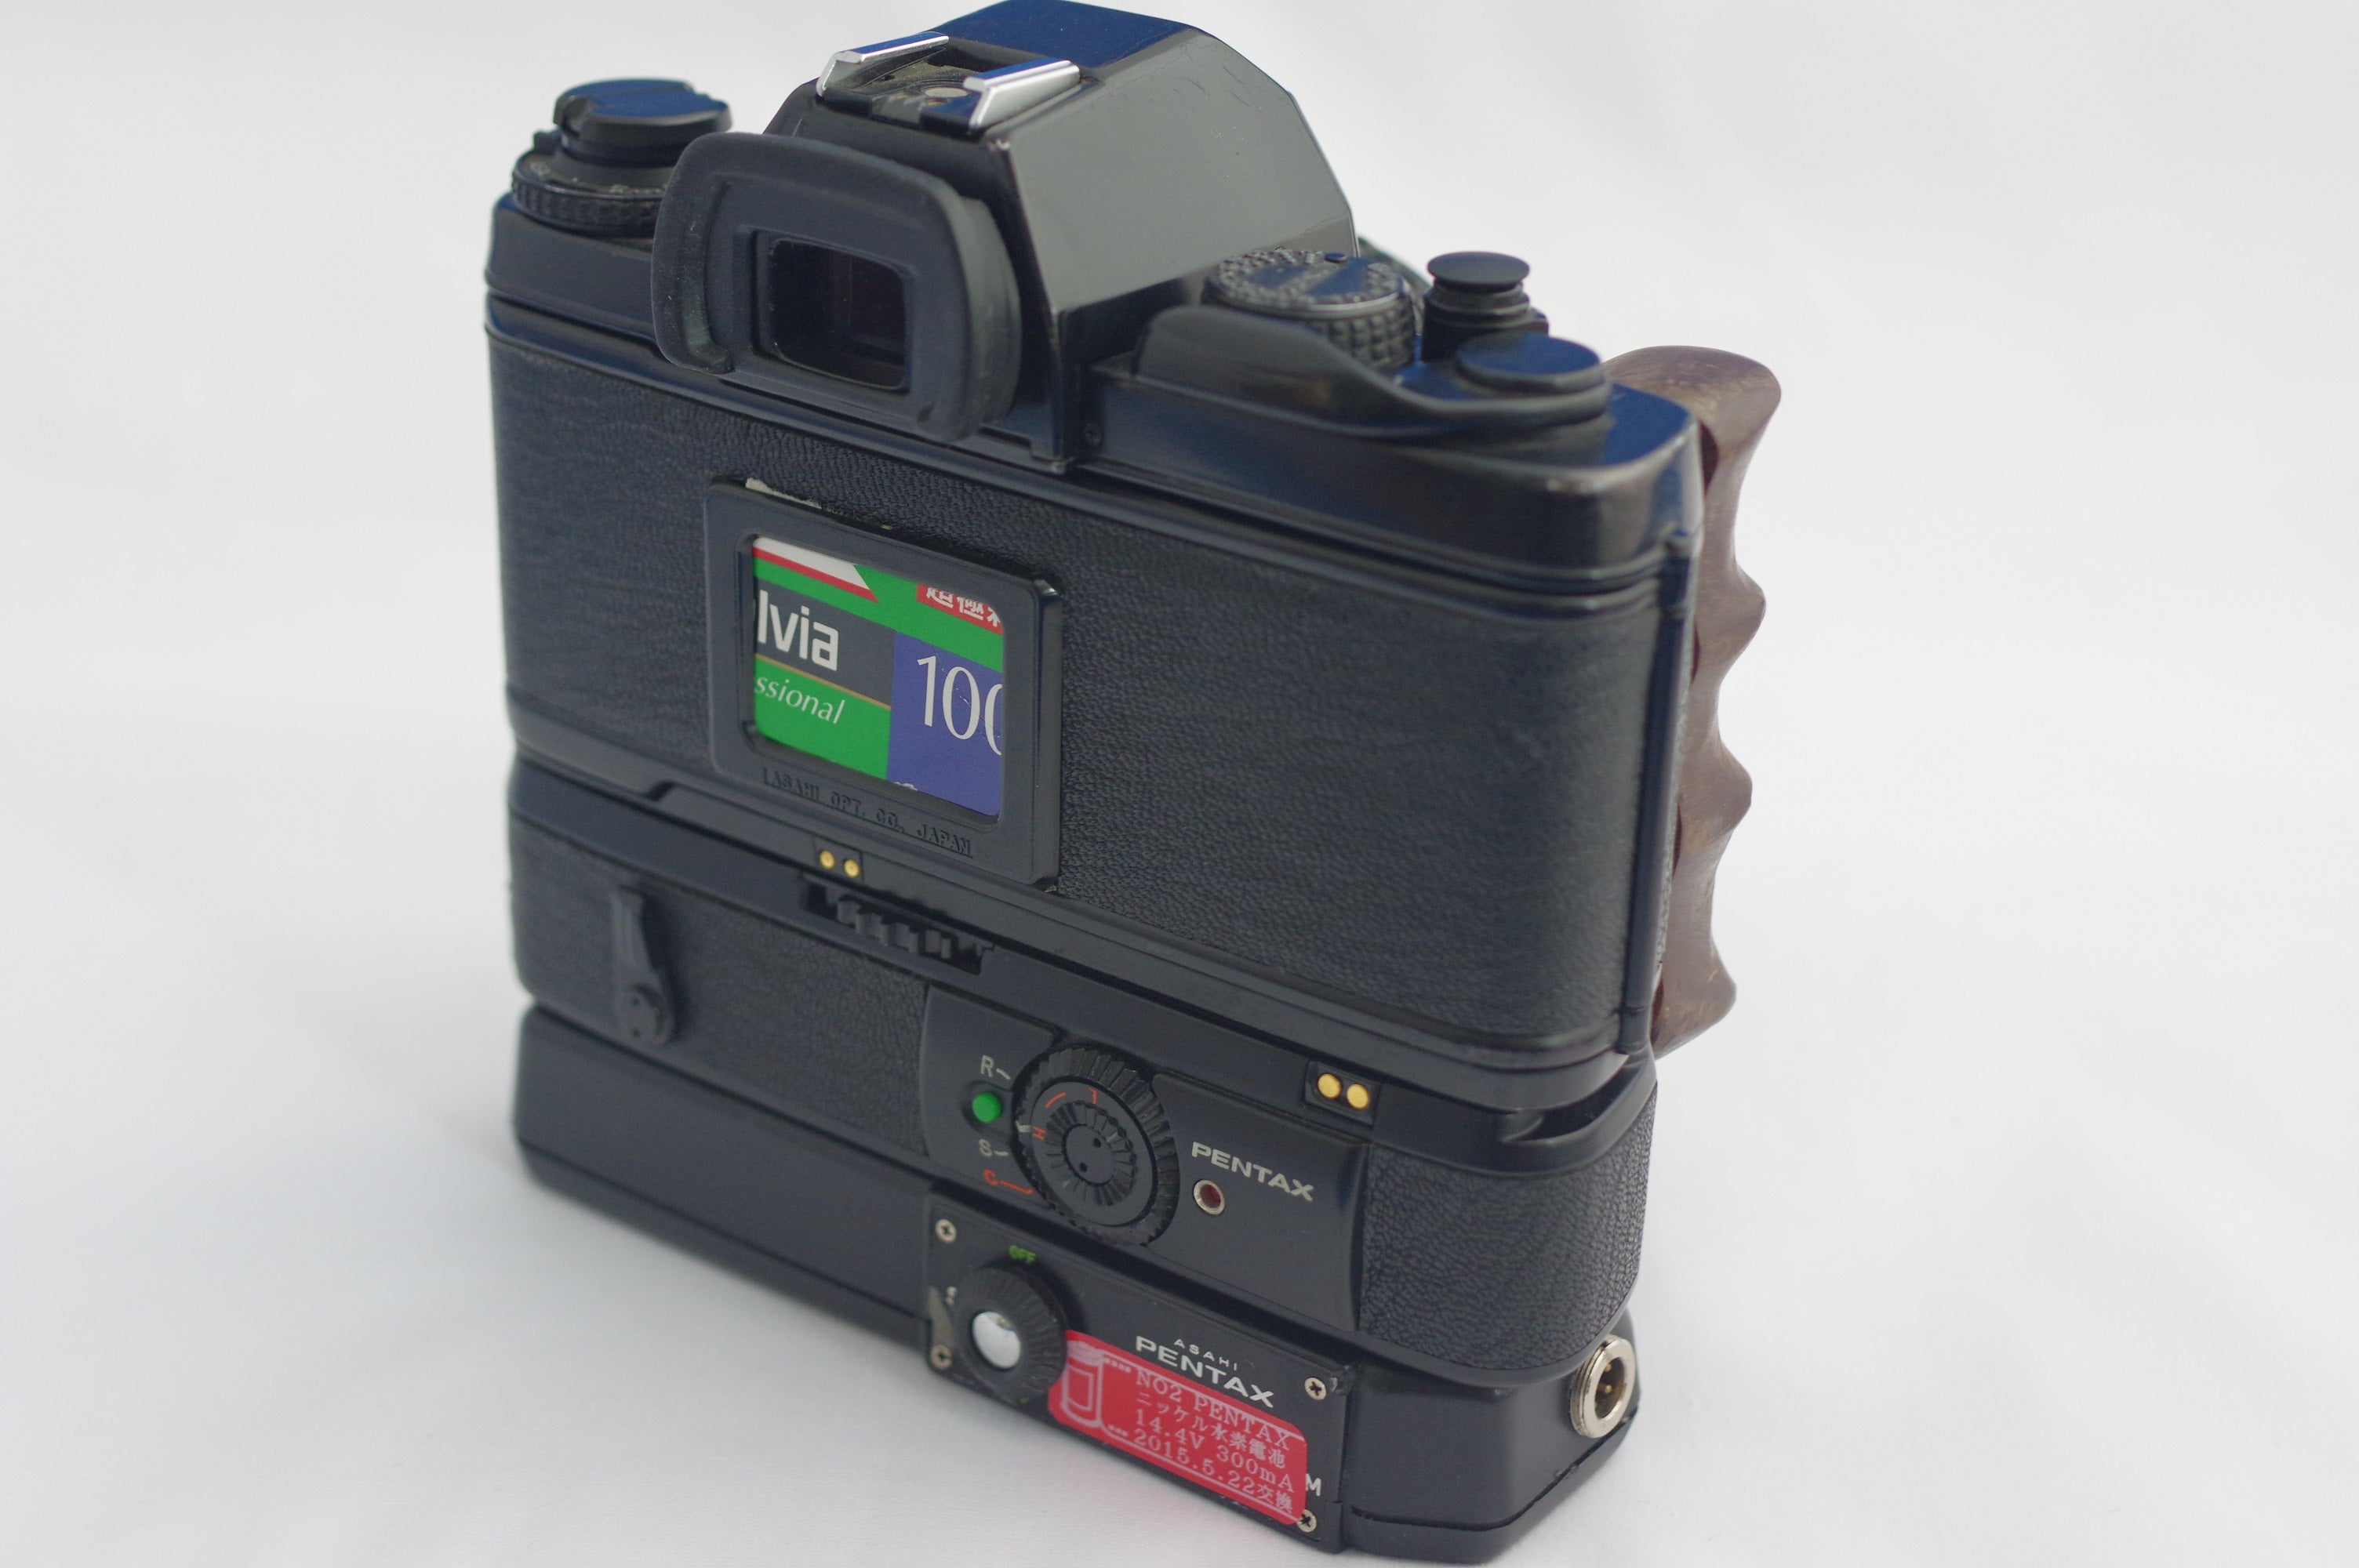 PENTAX LX 前期型 - 最初の一眼レフカメラです | はなはなのブログ